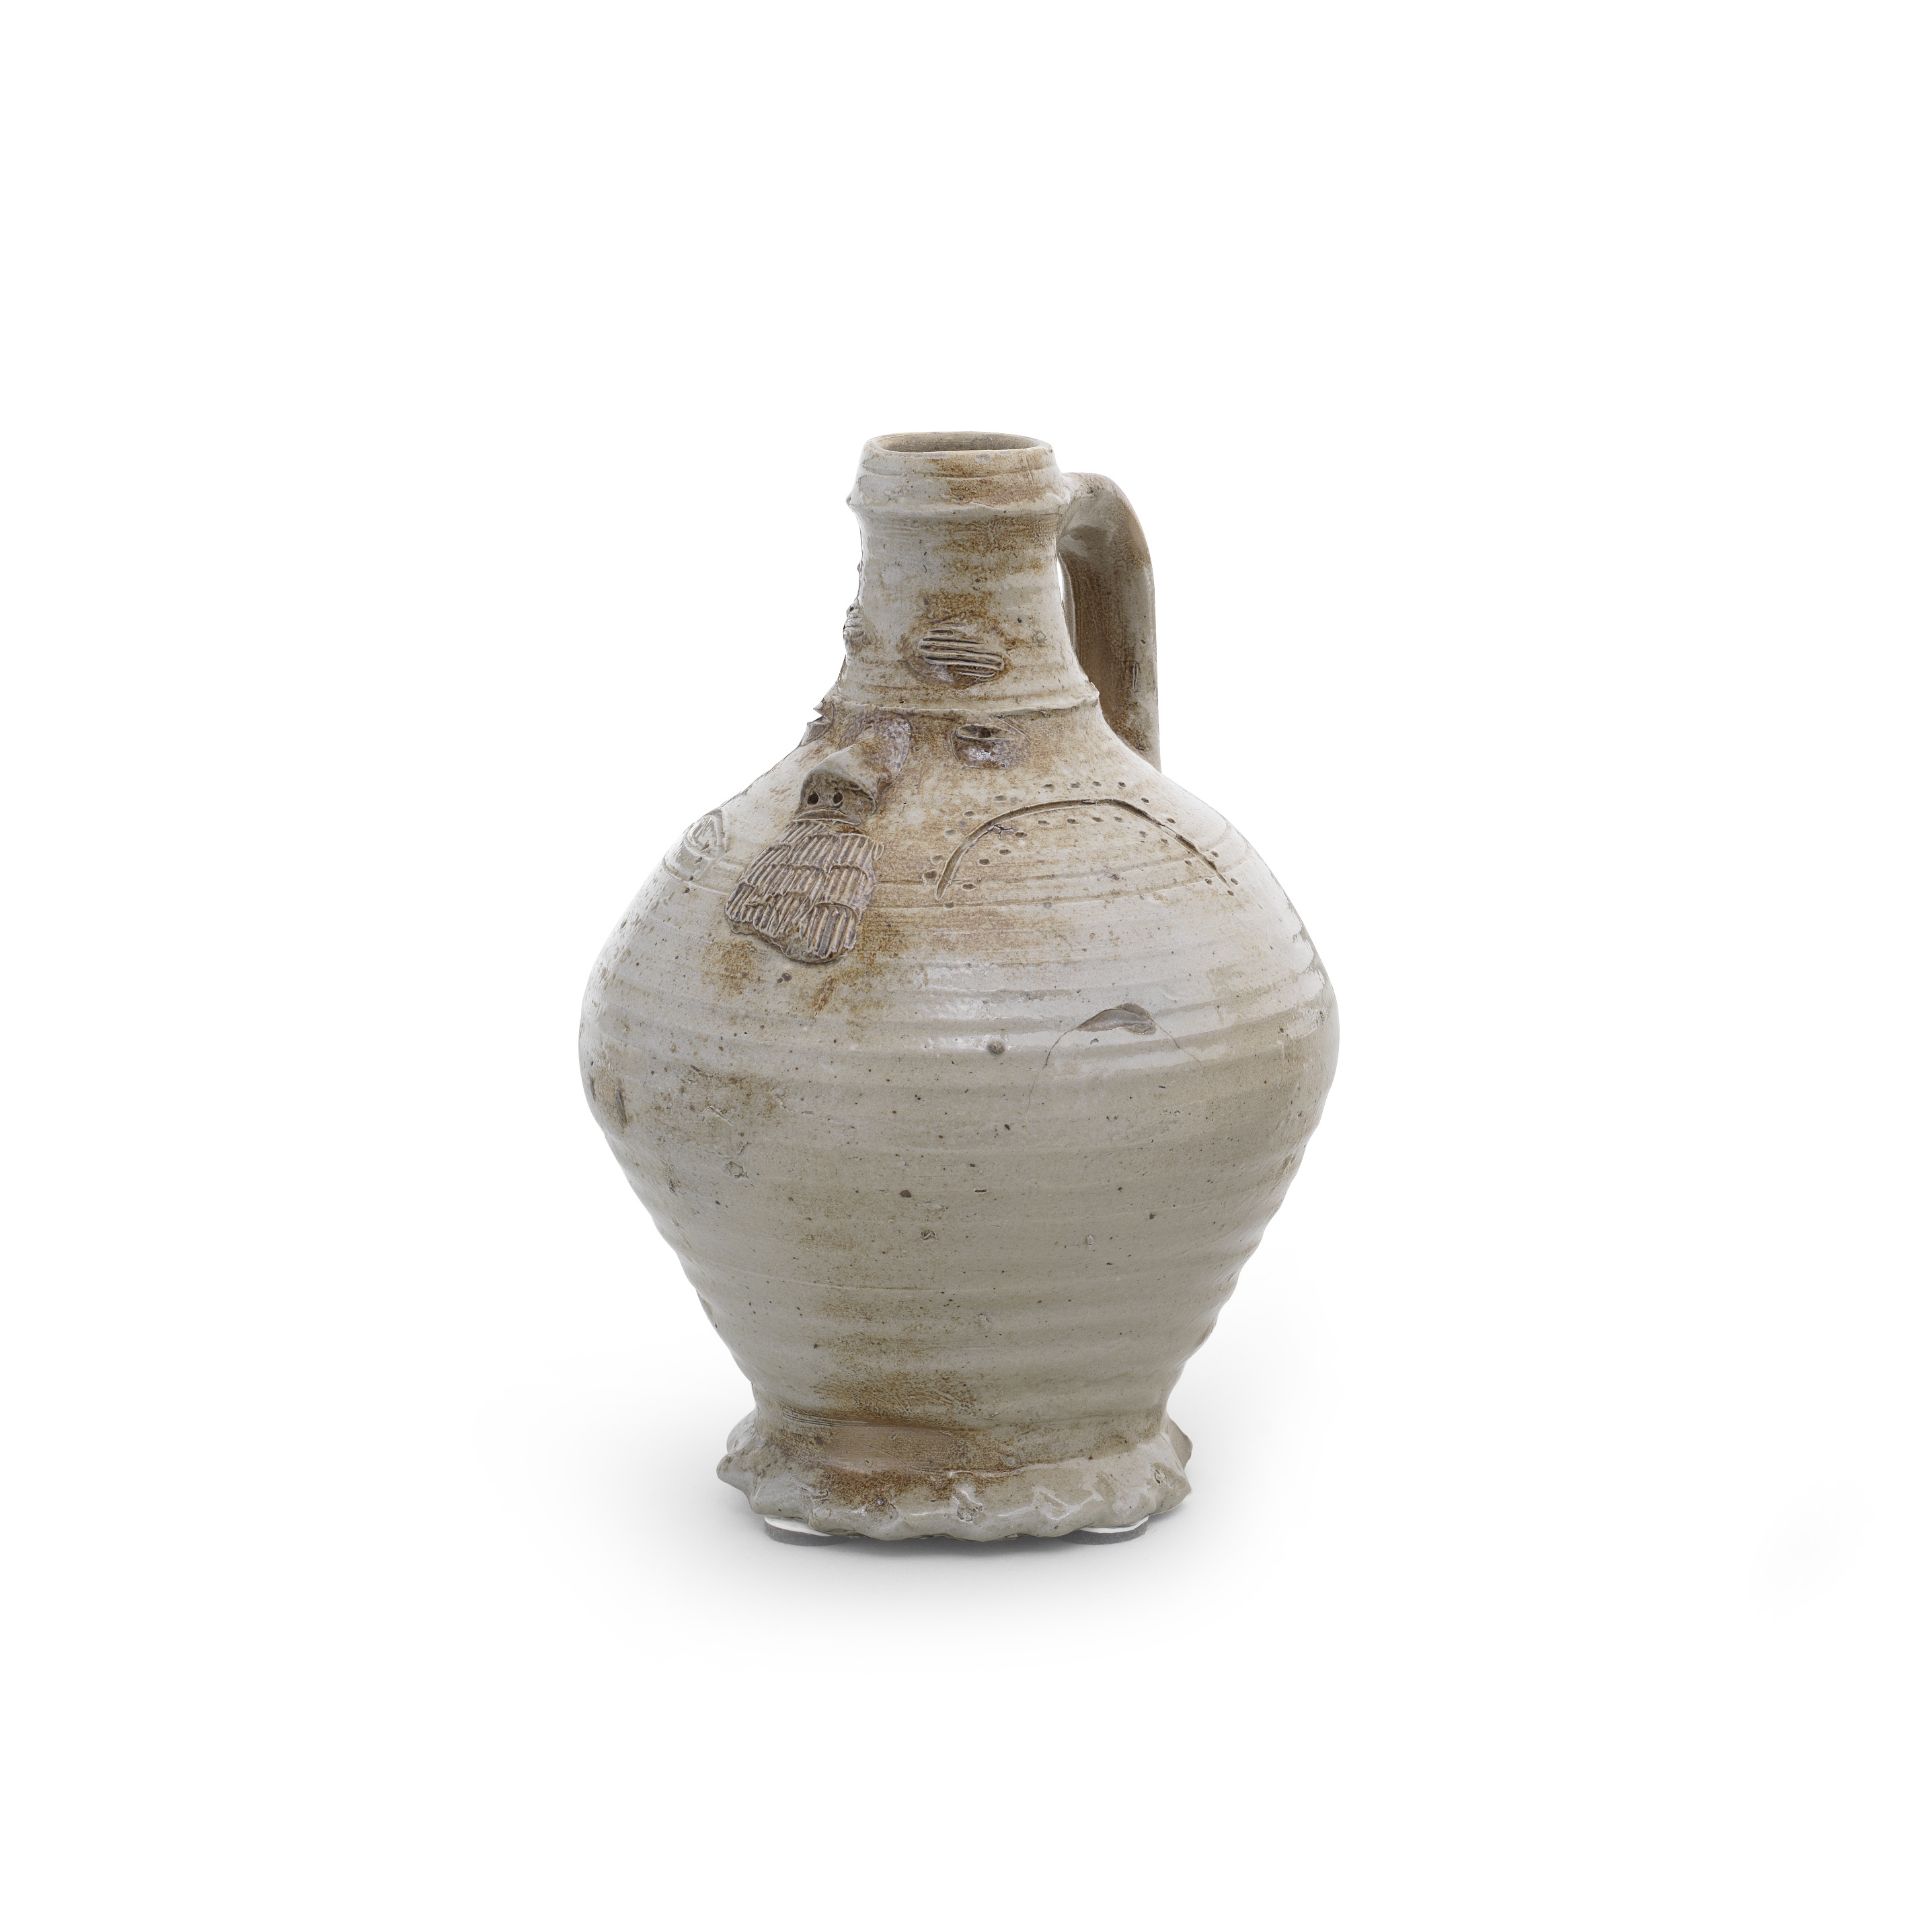 A Raeren/Aachen stoneware jug, circa 1475-1525